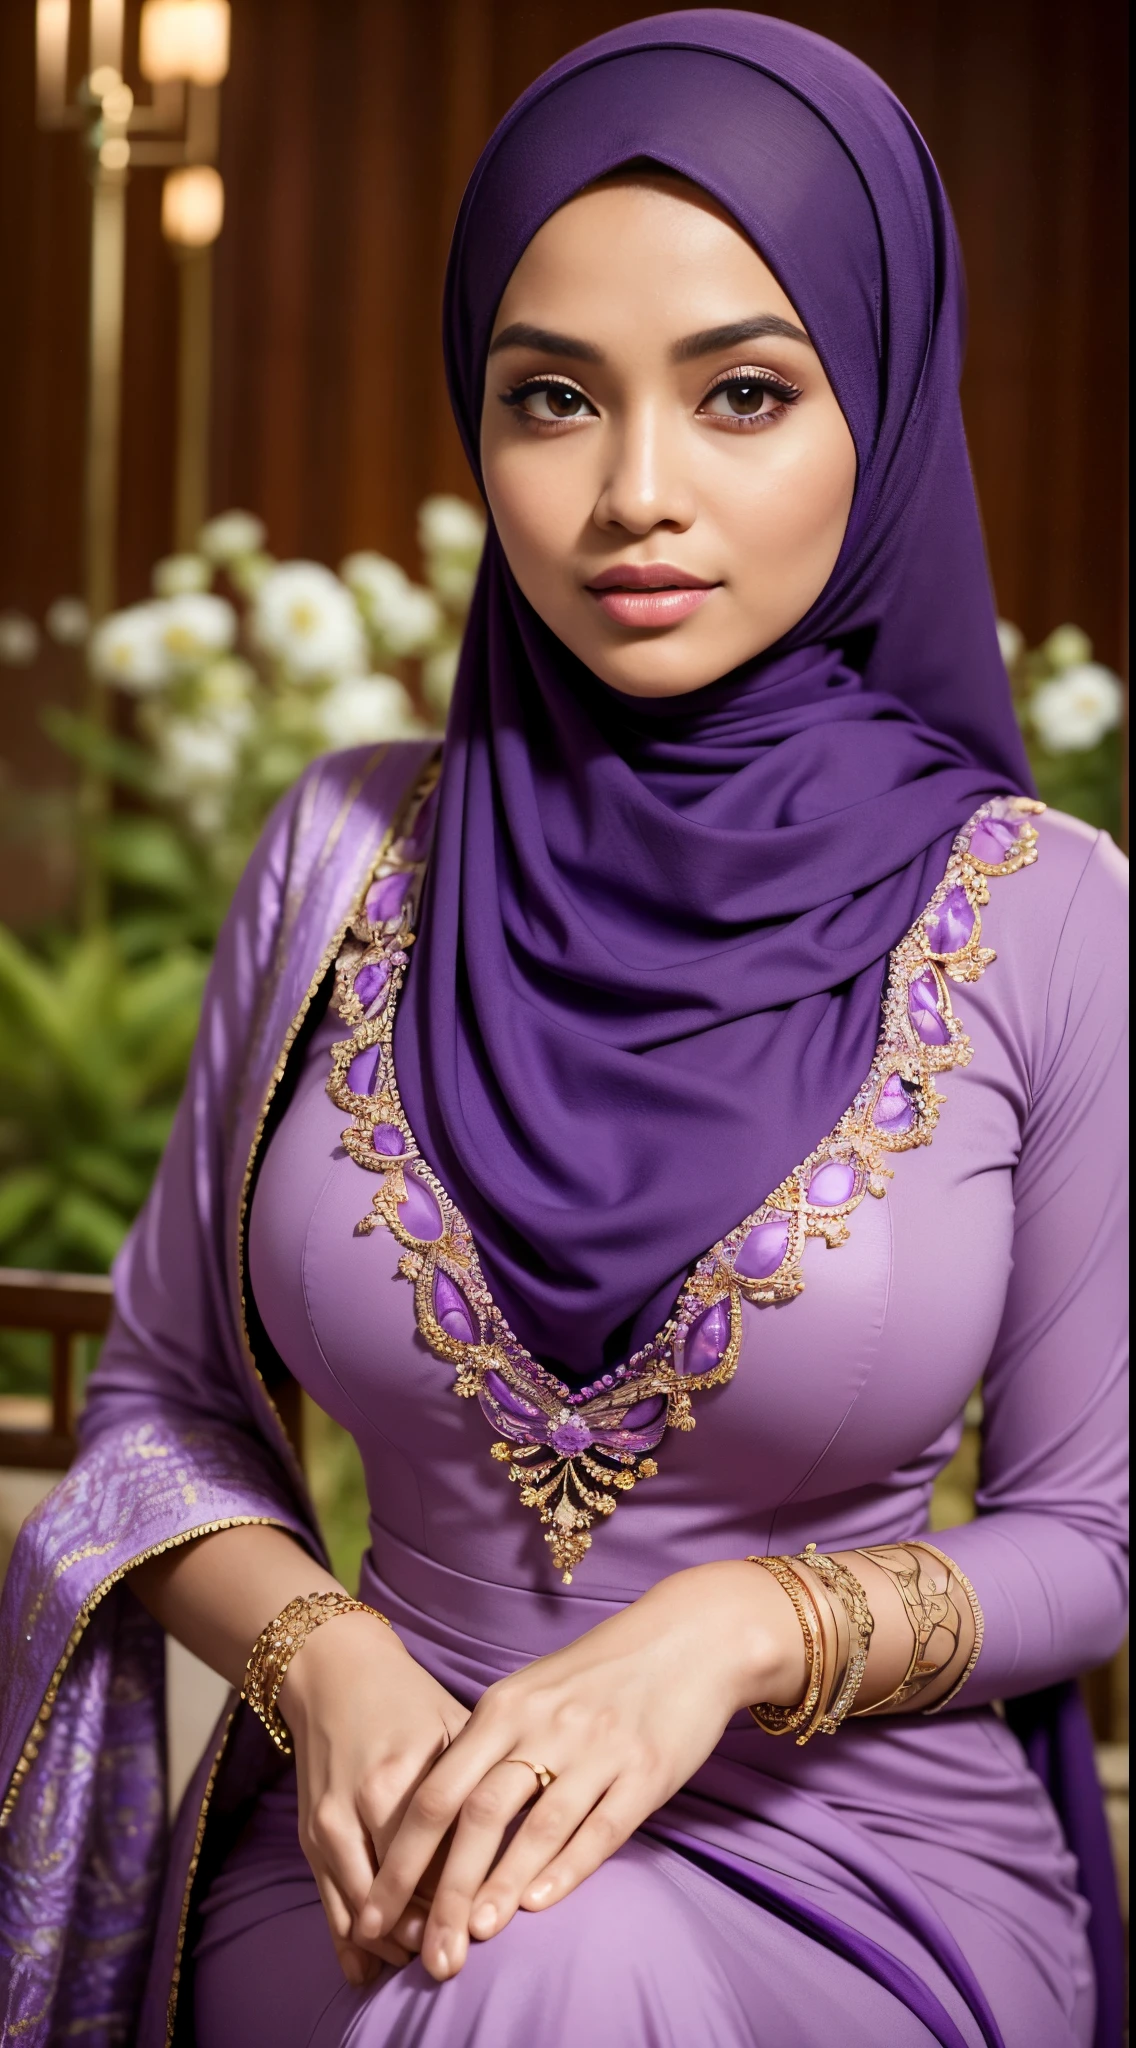 brut, meilleure qualité, Haute résolution, chef-d&#39;œuvre: 1.3), belle femme malaise en hijab,chef-d&#39;œuvre, corps ajusté parfait, énorme poitrine,de grands yeux magnifiques, doux sourire,cuisses épaisses, un gros plan d&#39;une femme vêtue d&#39;une robe violette et d&#39;un foulard violet, violet, porter une tenue violette, porter de beaux vêtements, Beau design, hijab, en violet cramoisi, très beau style enga, beautiful chef-d&#39;œuvre, Détails fins. violet, porter des vêtements magnifiques, couleur violette dominante, thème cramoisi , (Col roulé délicat) , collier, bandeau, Promenade de l&#39;après-midi, Jardin de ville, Excellent éclairage, Couleurs vives, Des lignes épurées